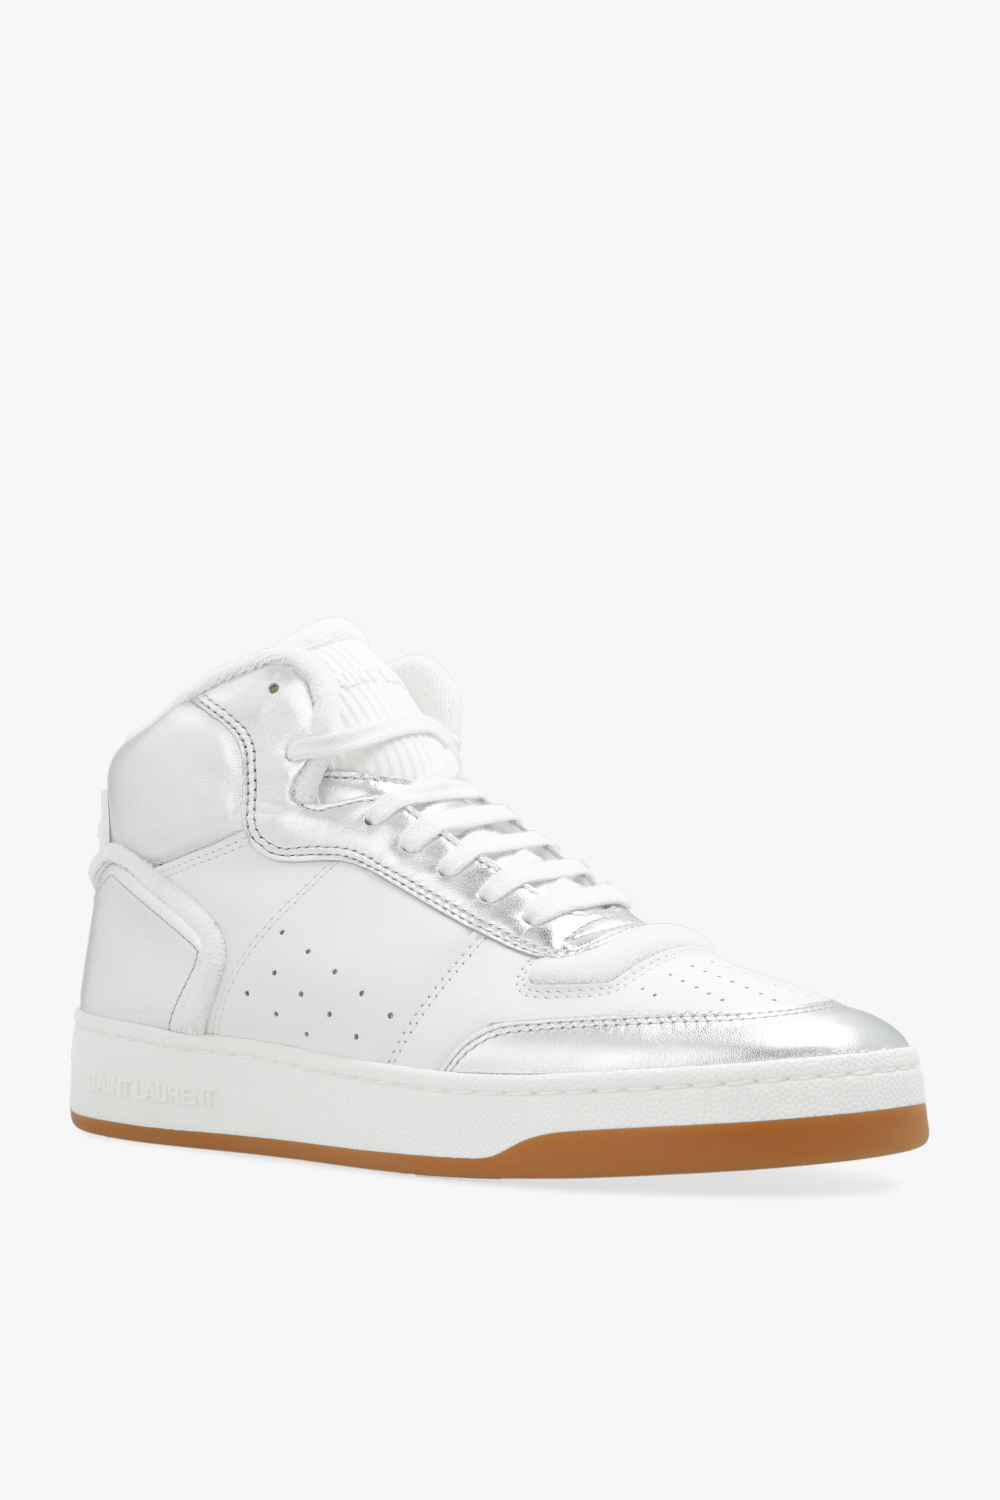 Saint Laurent ‘SL 80’ sneakers